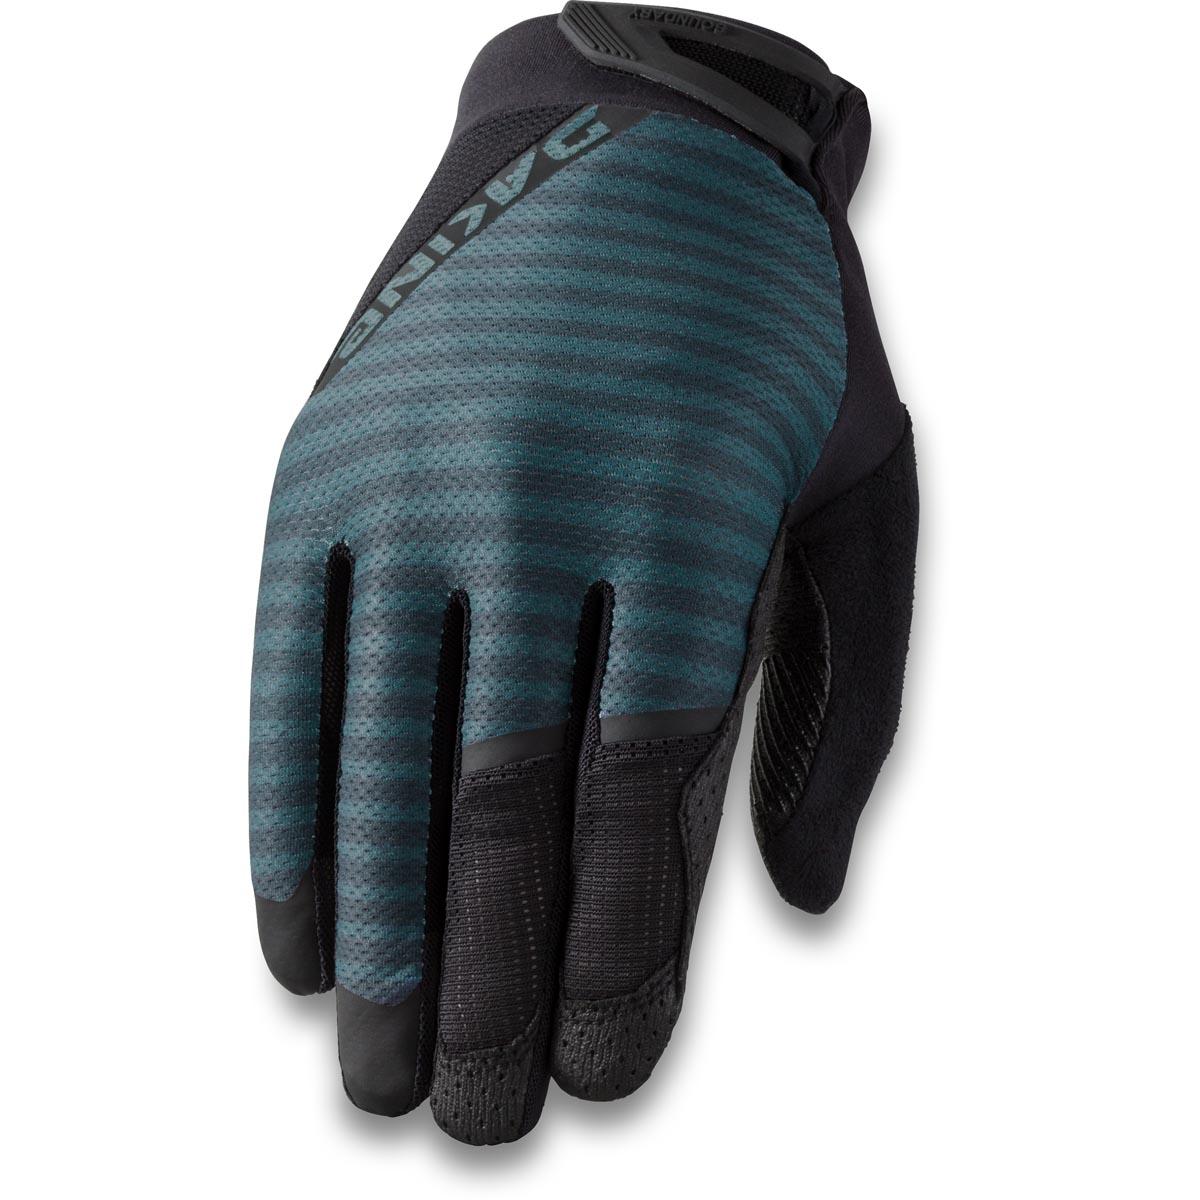 Dakine Boundary Men's Bike Gloves